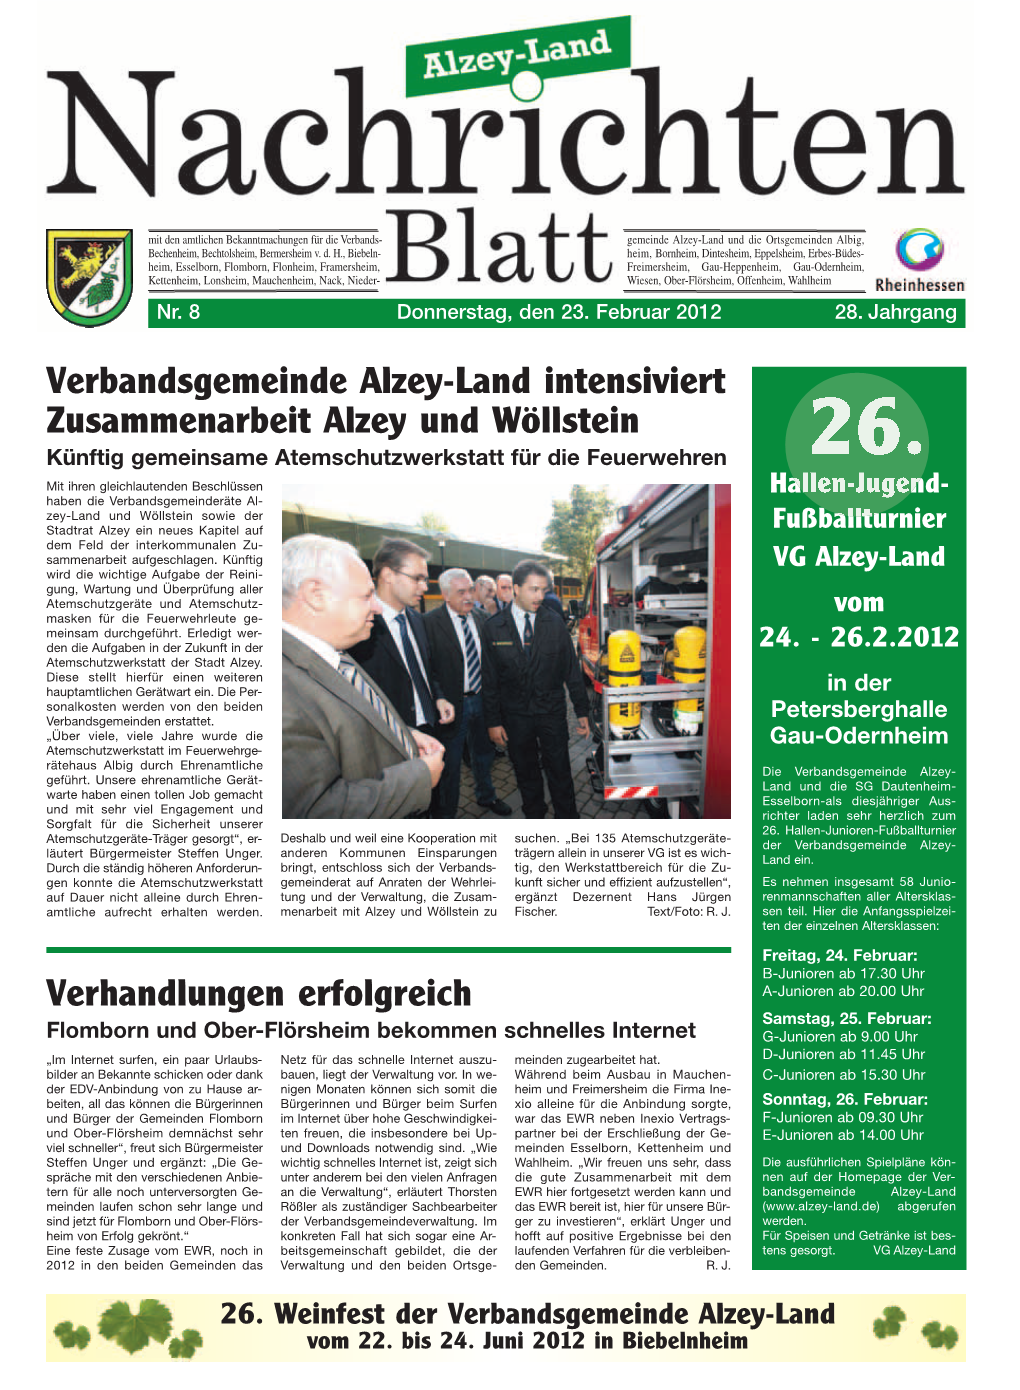 Verhandlungen Erfolgreich Verbandsgemeinde Alzey-Land